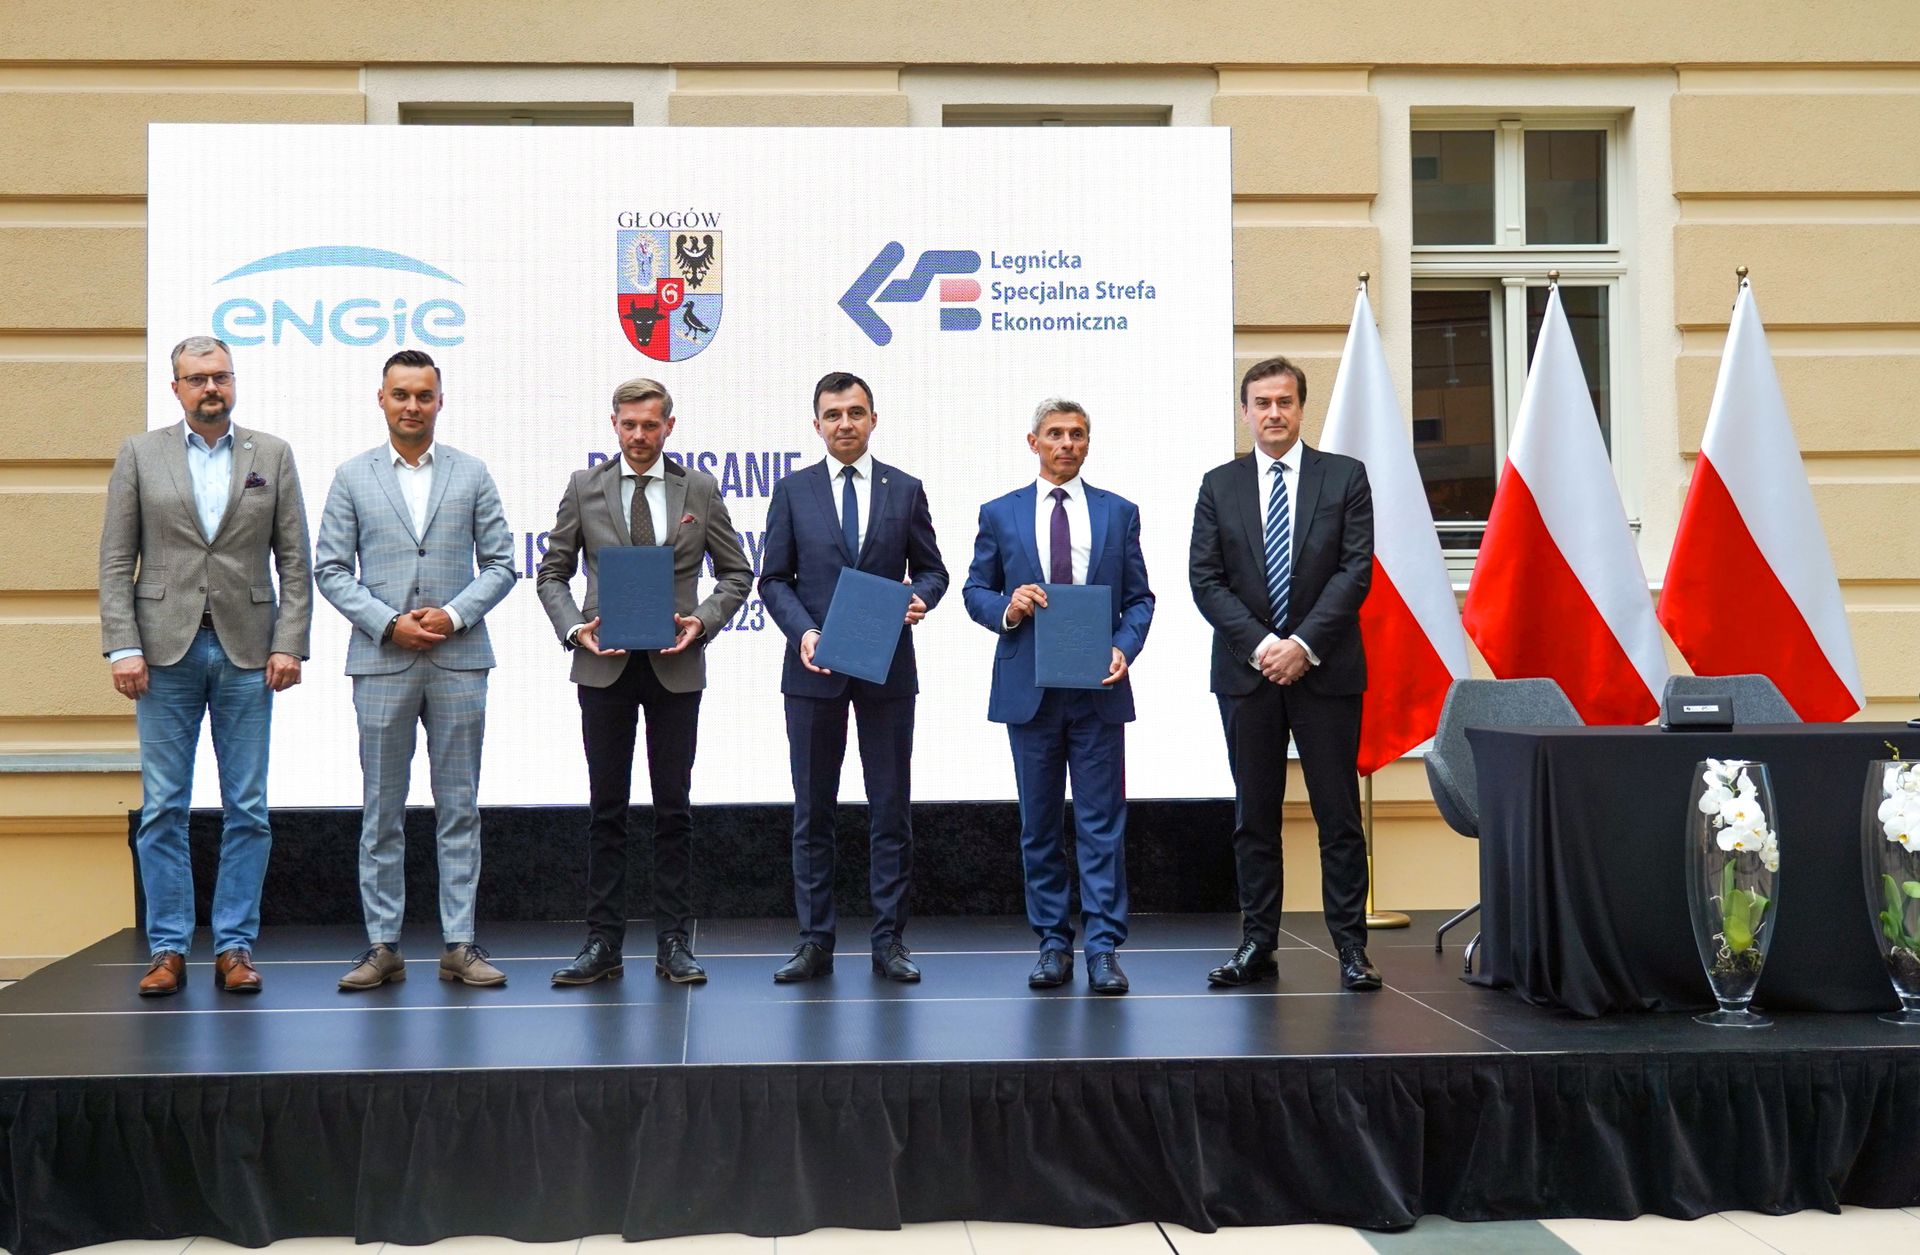 ENGIE, światowy lider transformacji energetycznej, inwestuje w Głogowie. Wybuduje instalację do produkcji biometanu